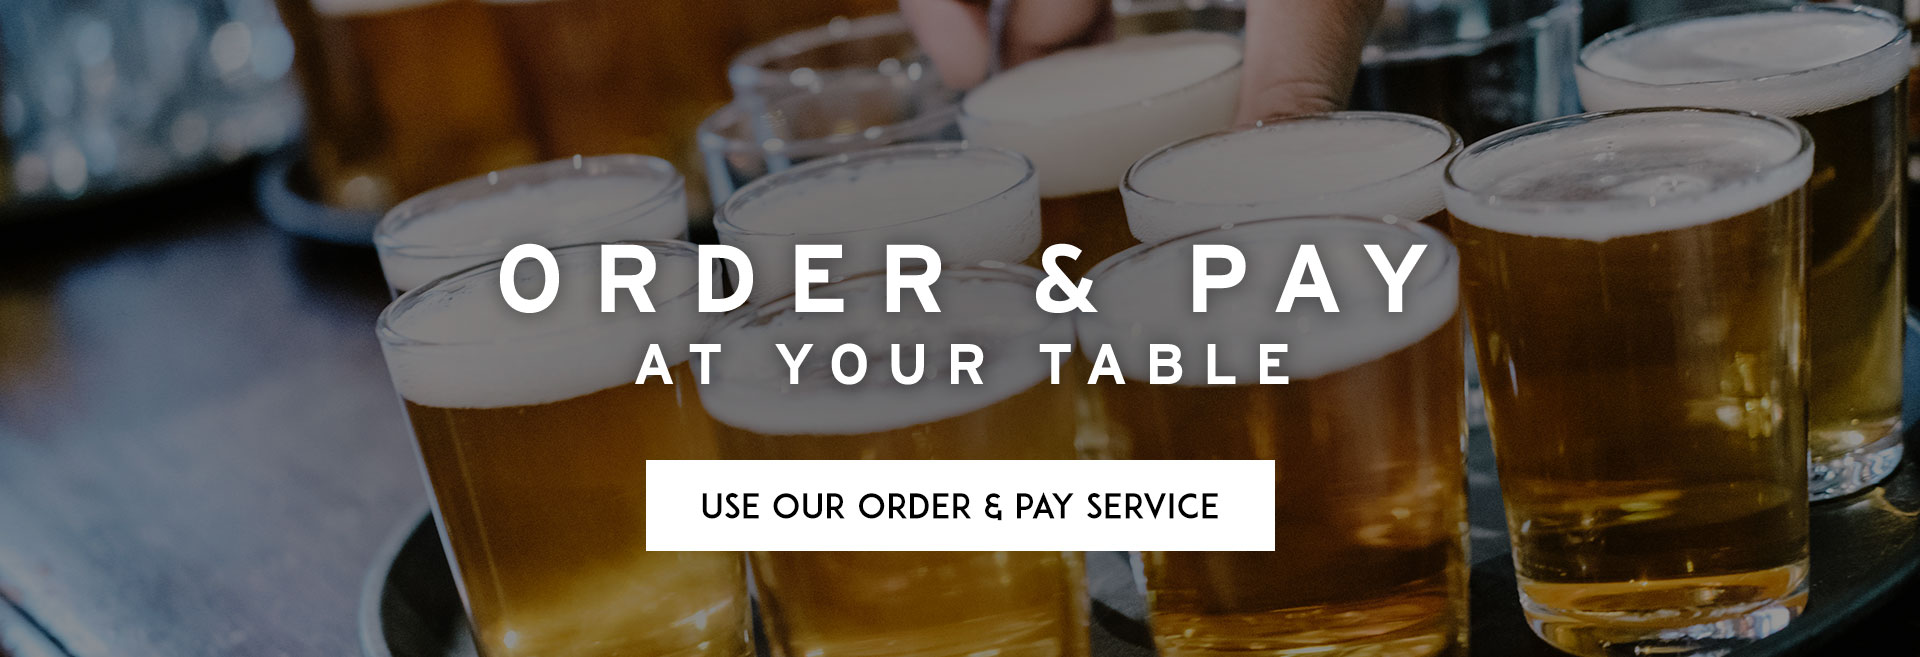 Order at table at The Crown Tavern hero